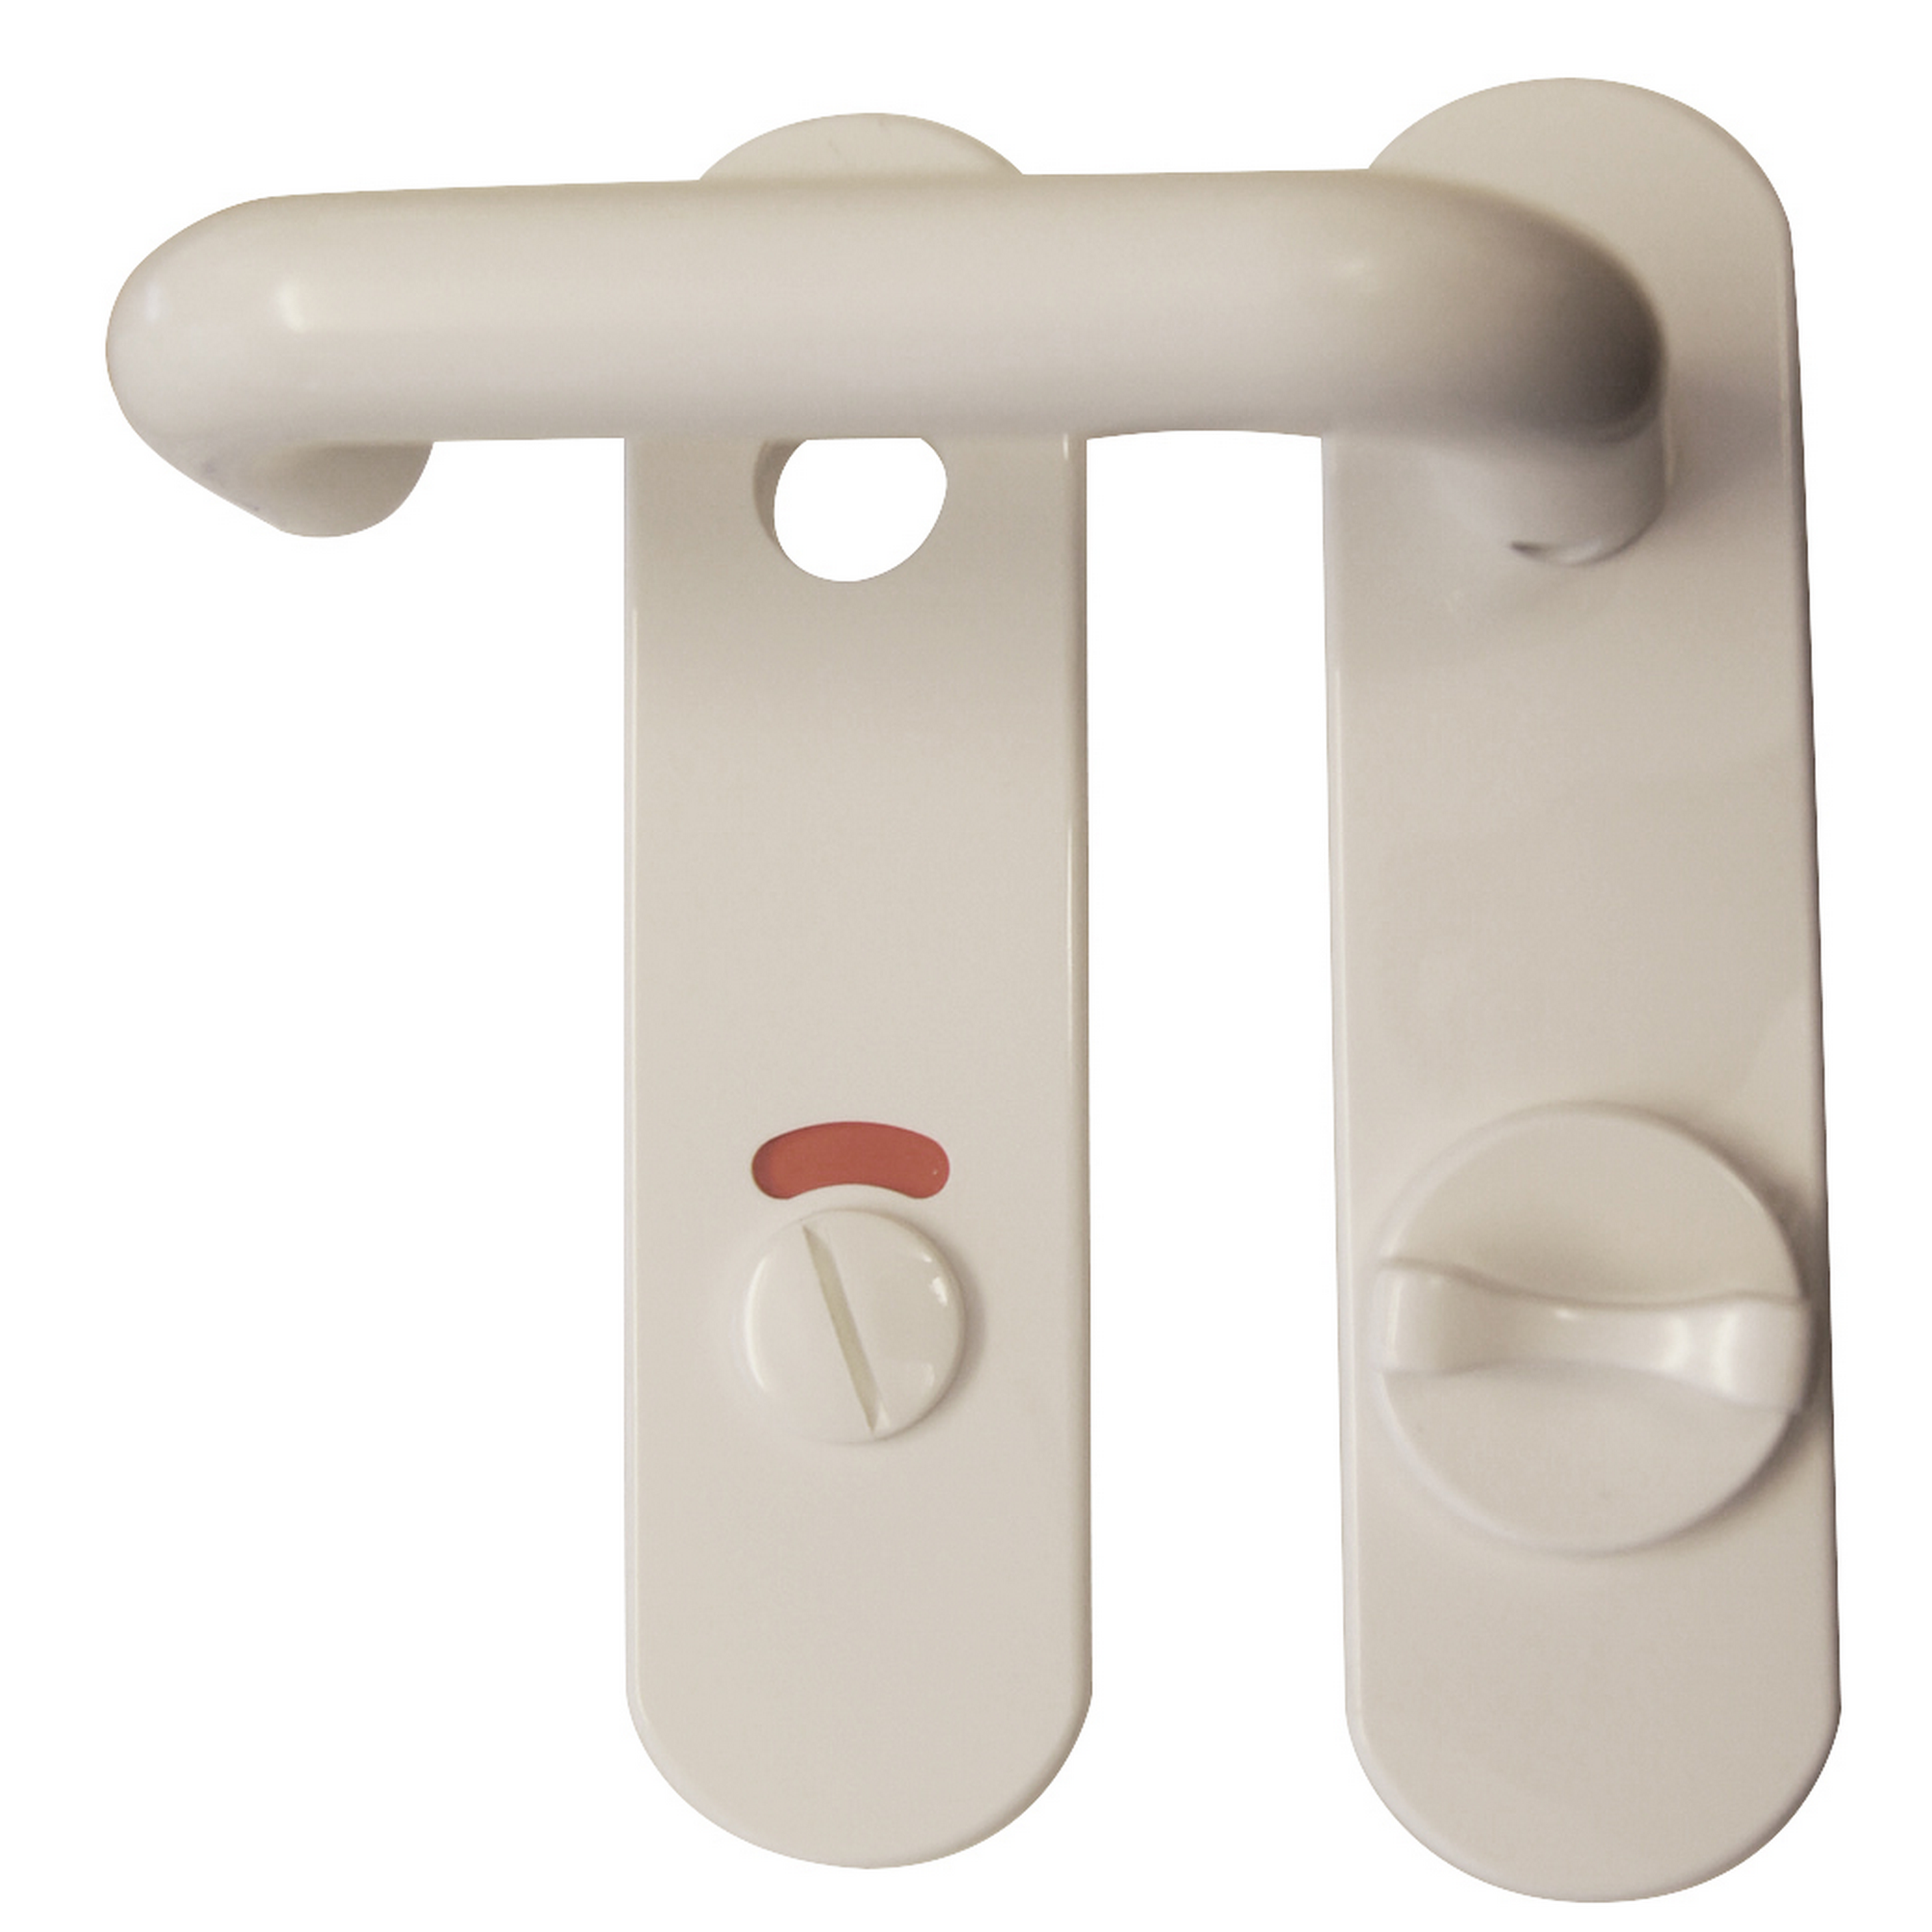 Kurzschildgarnitur 'Nylon' WC-Riegel, weiß , für Bad/WC + product picture